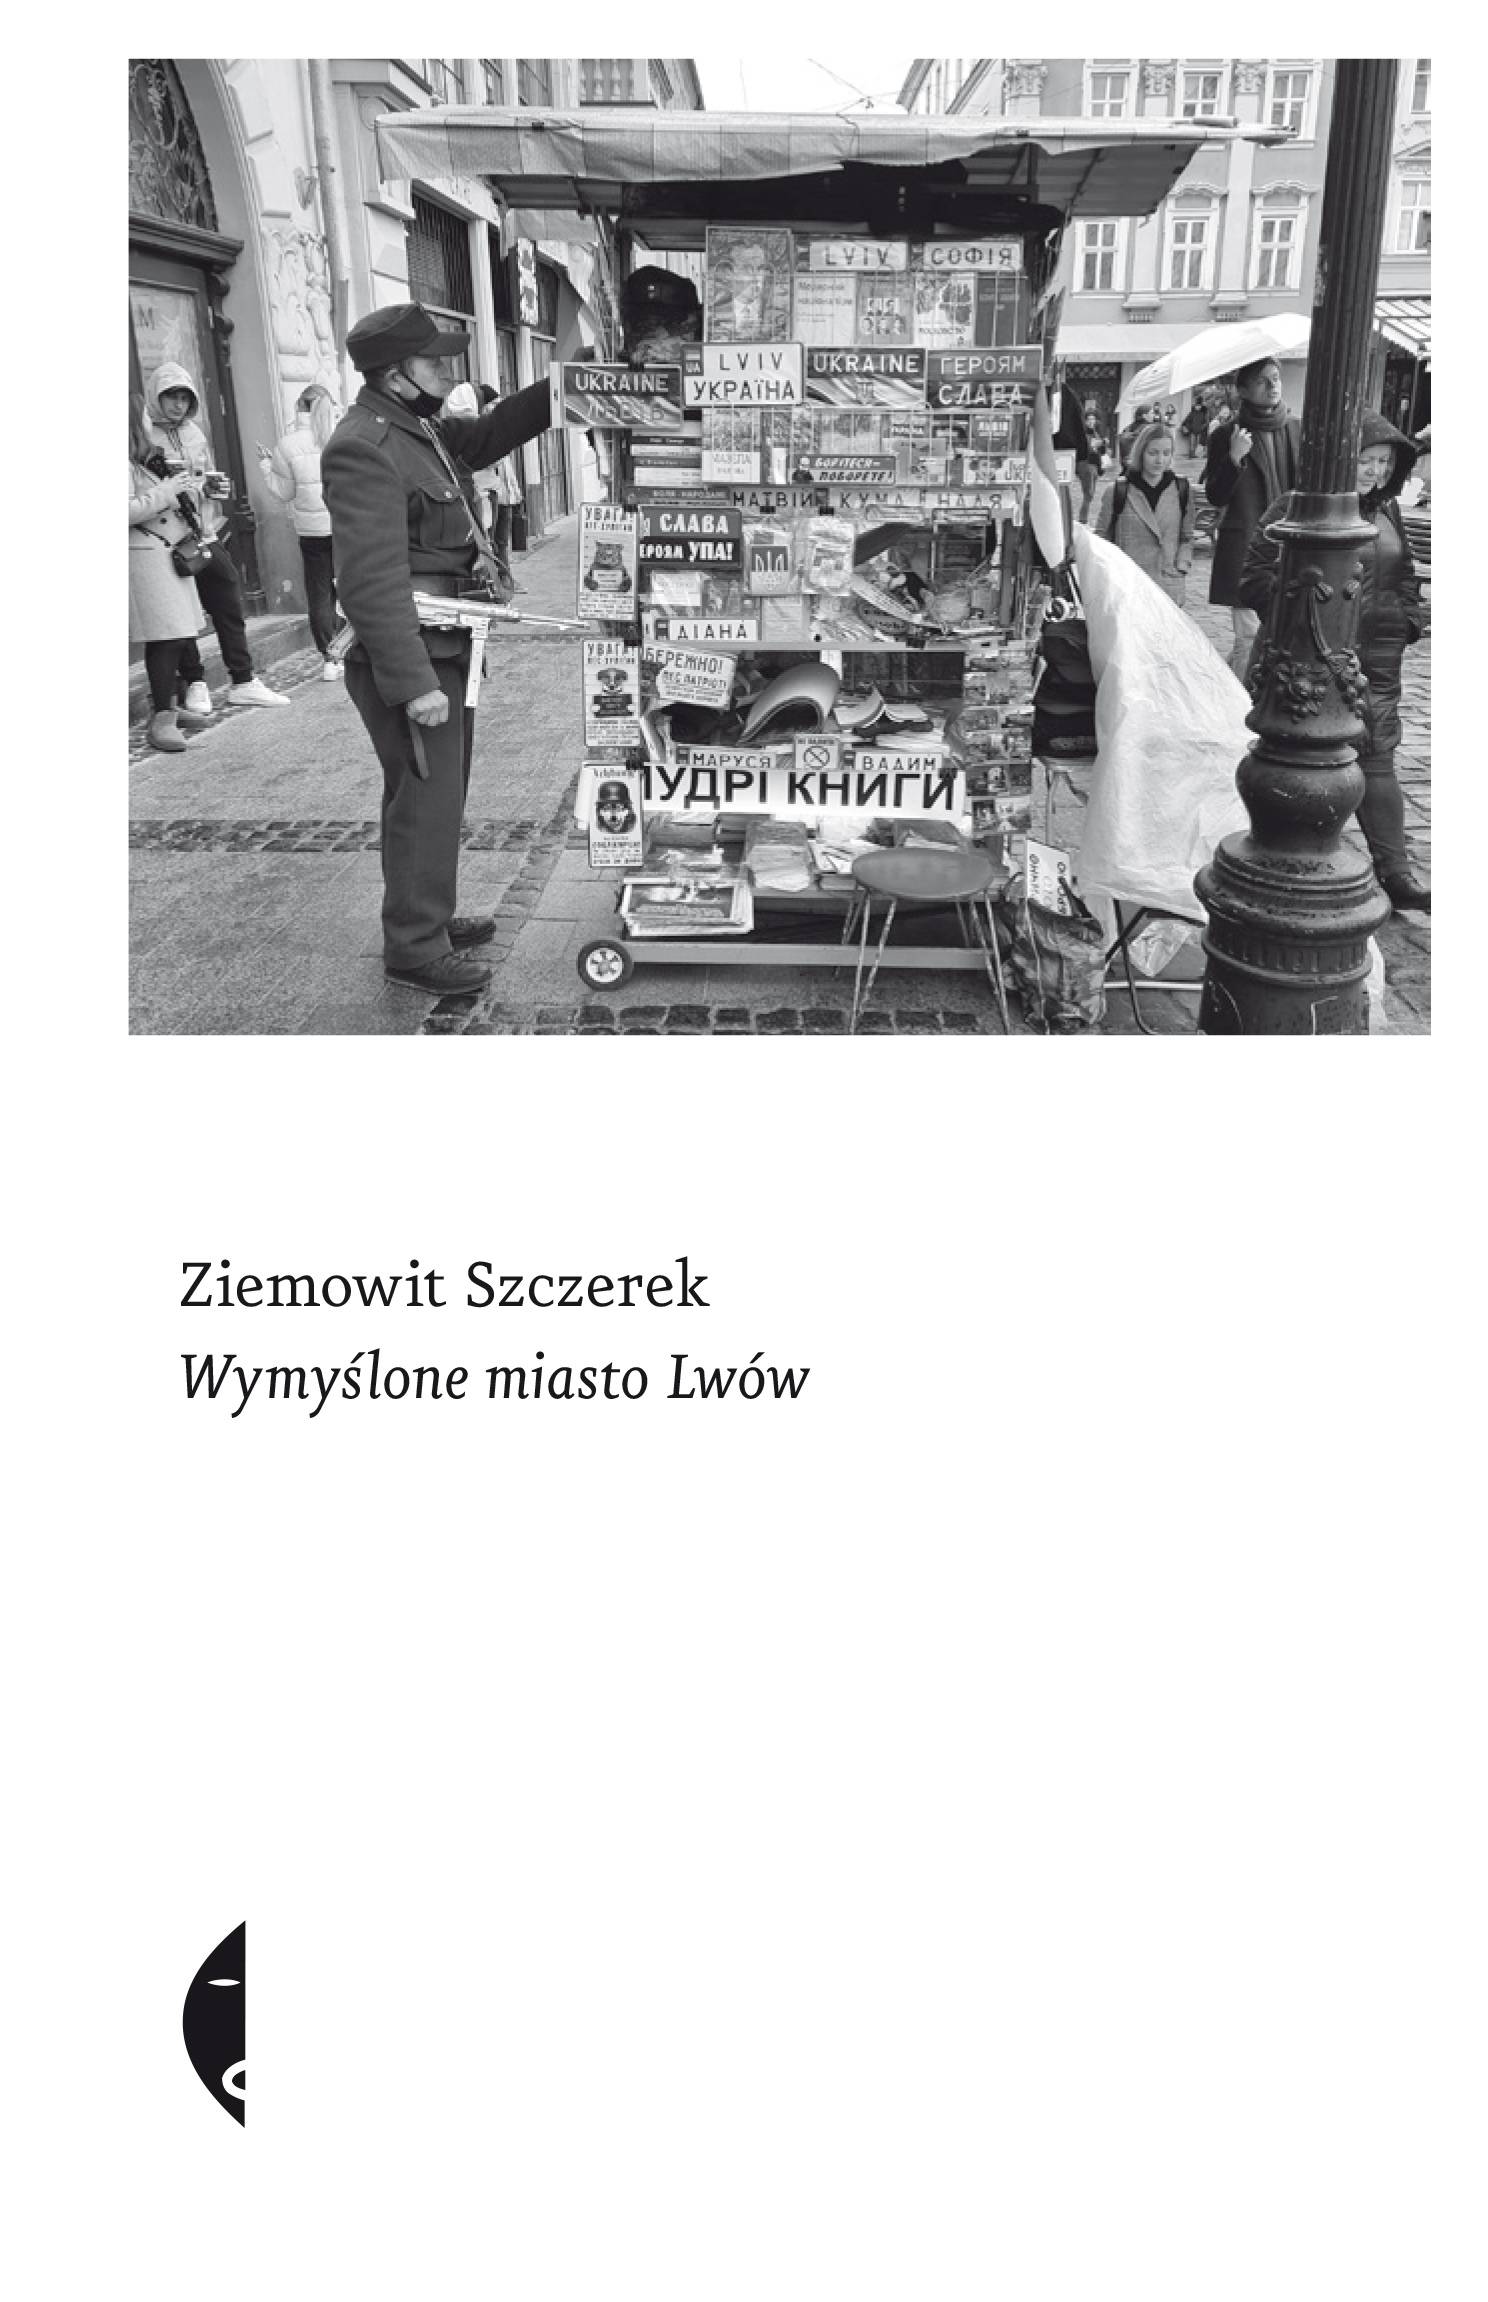 Ziemowit Szczerek, „Wymyślone miasto Lwów”, wydawnictwo Czarne (Fot. materiały prasowe)